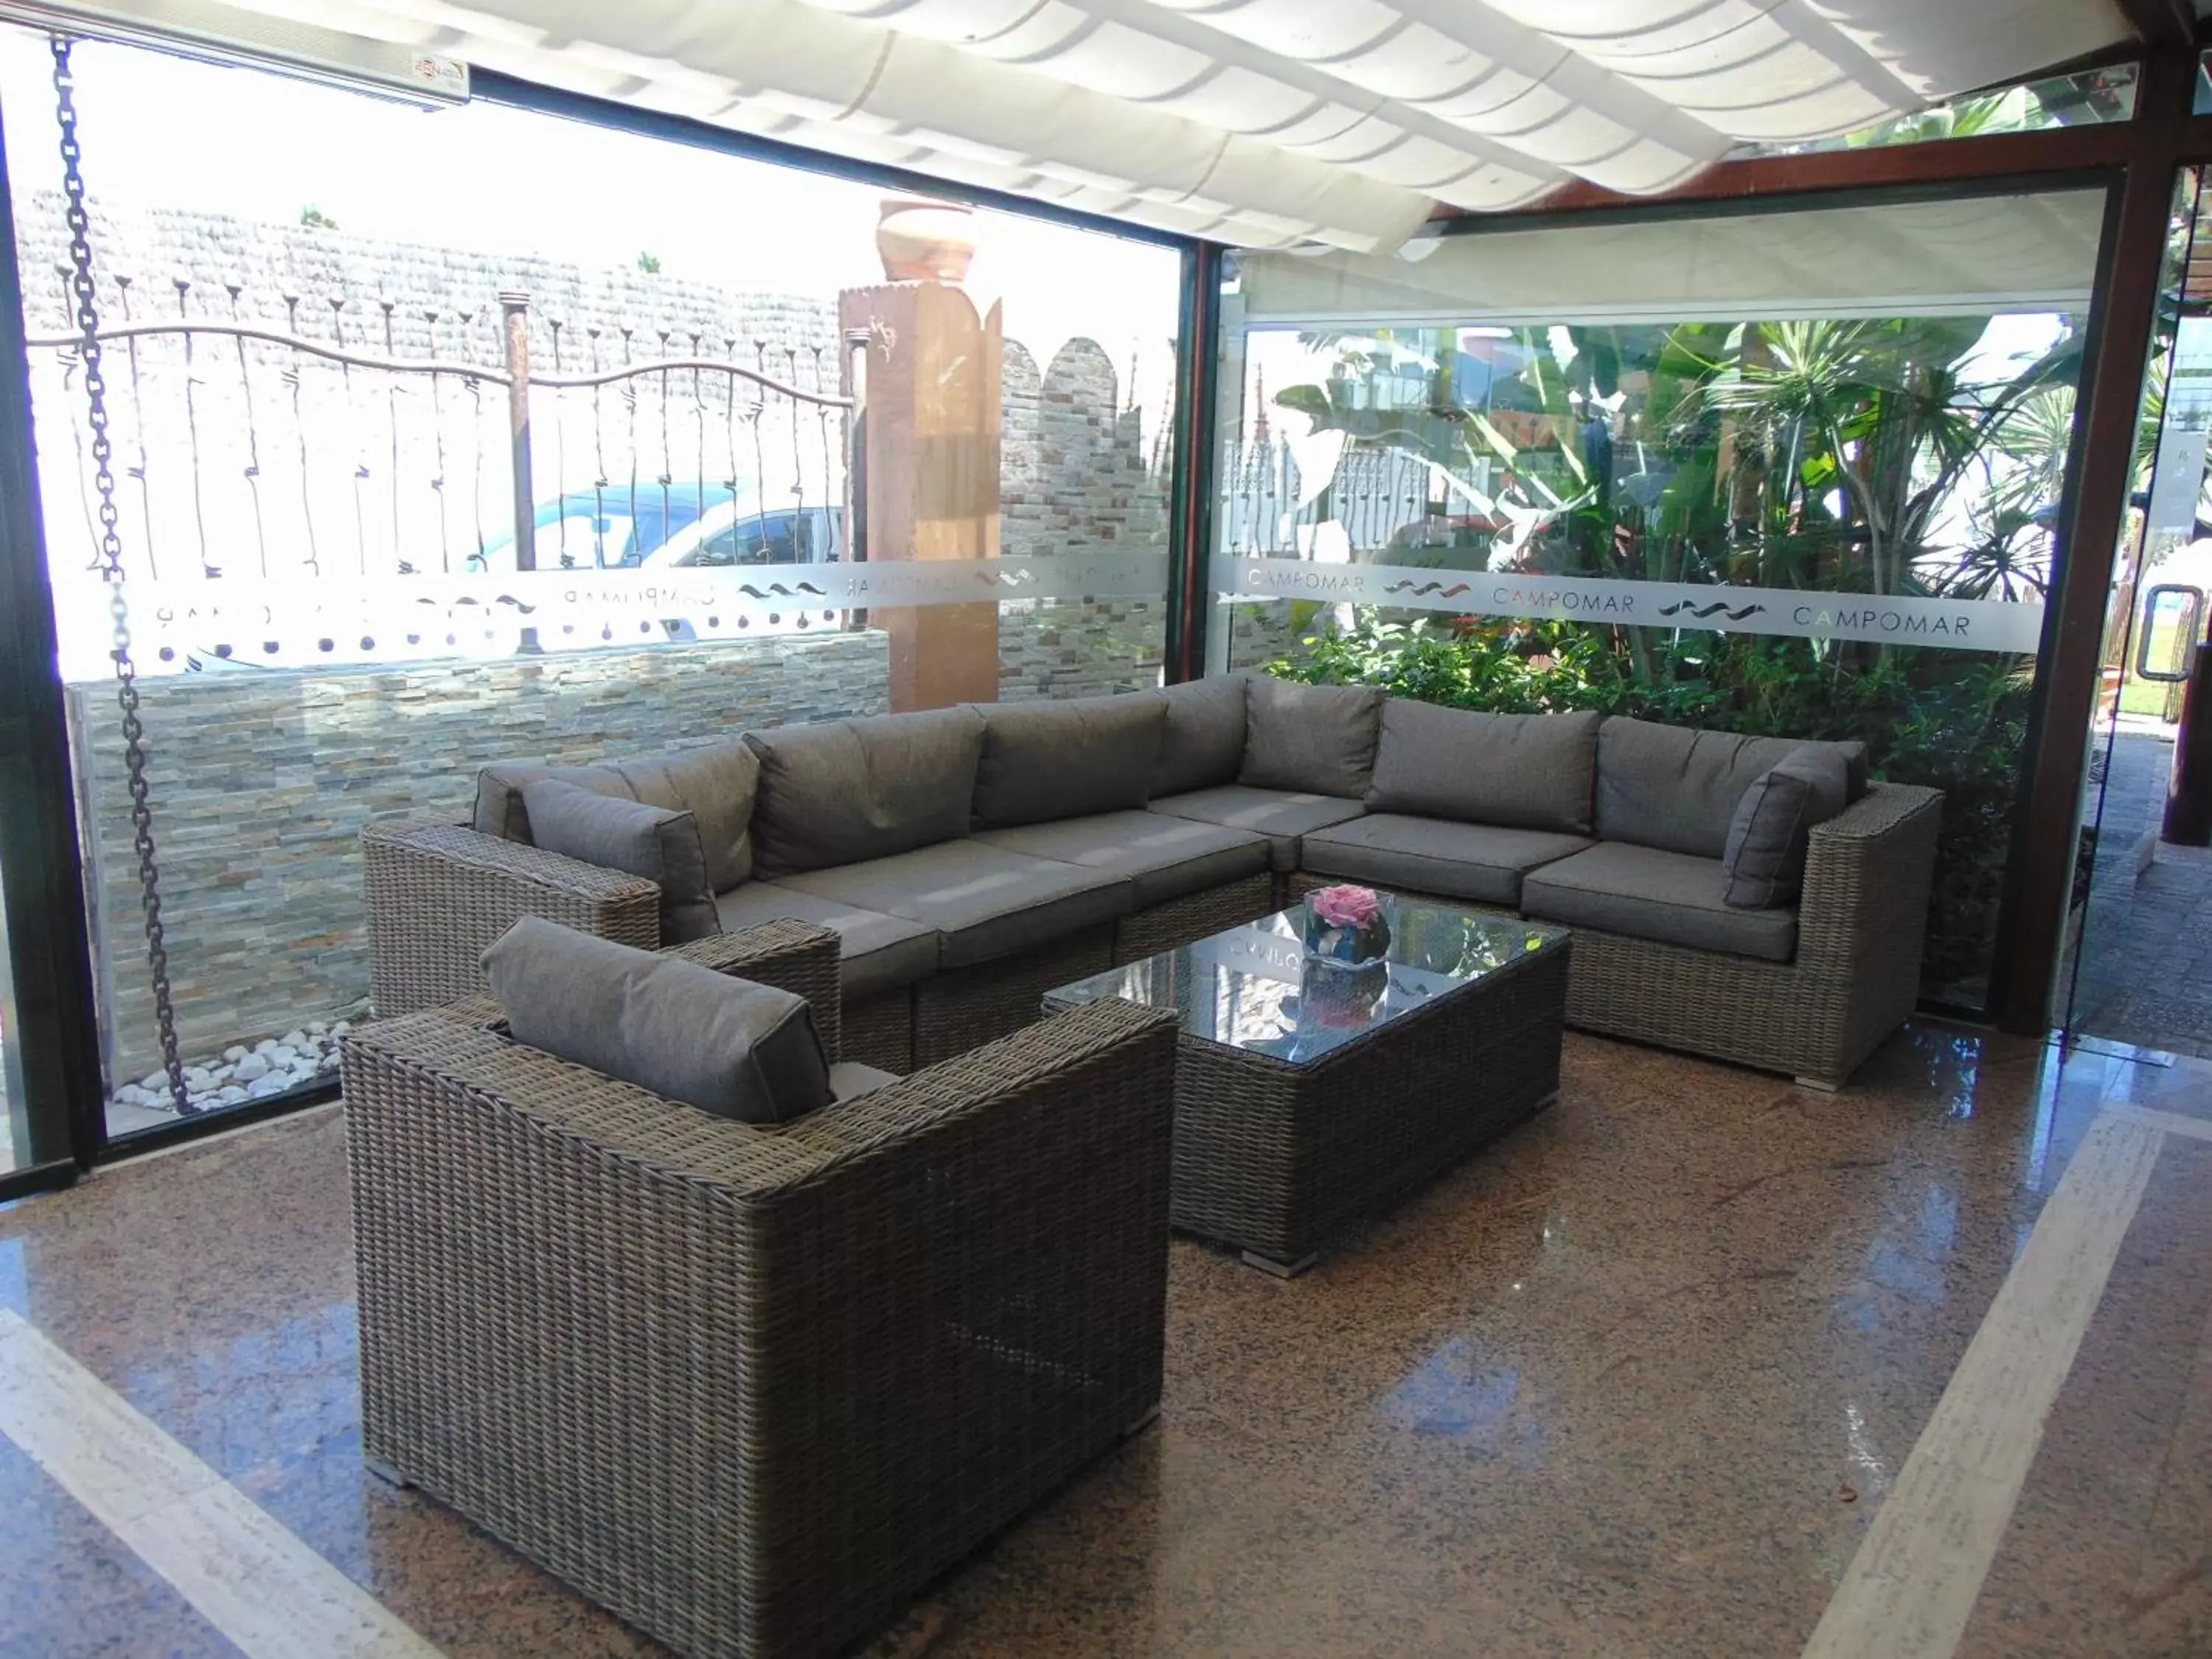 Living room in Campomar Playa